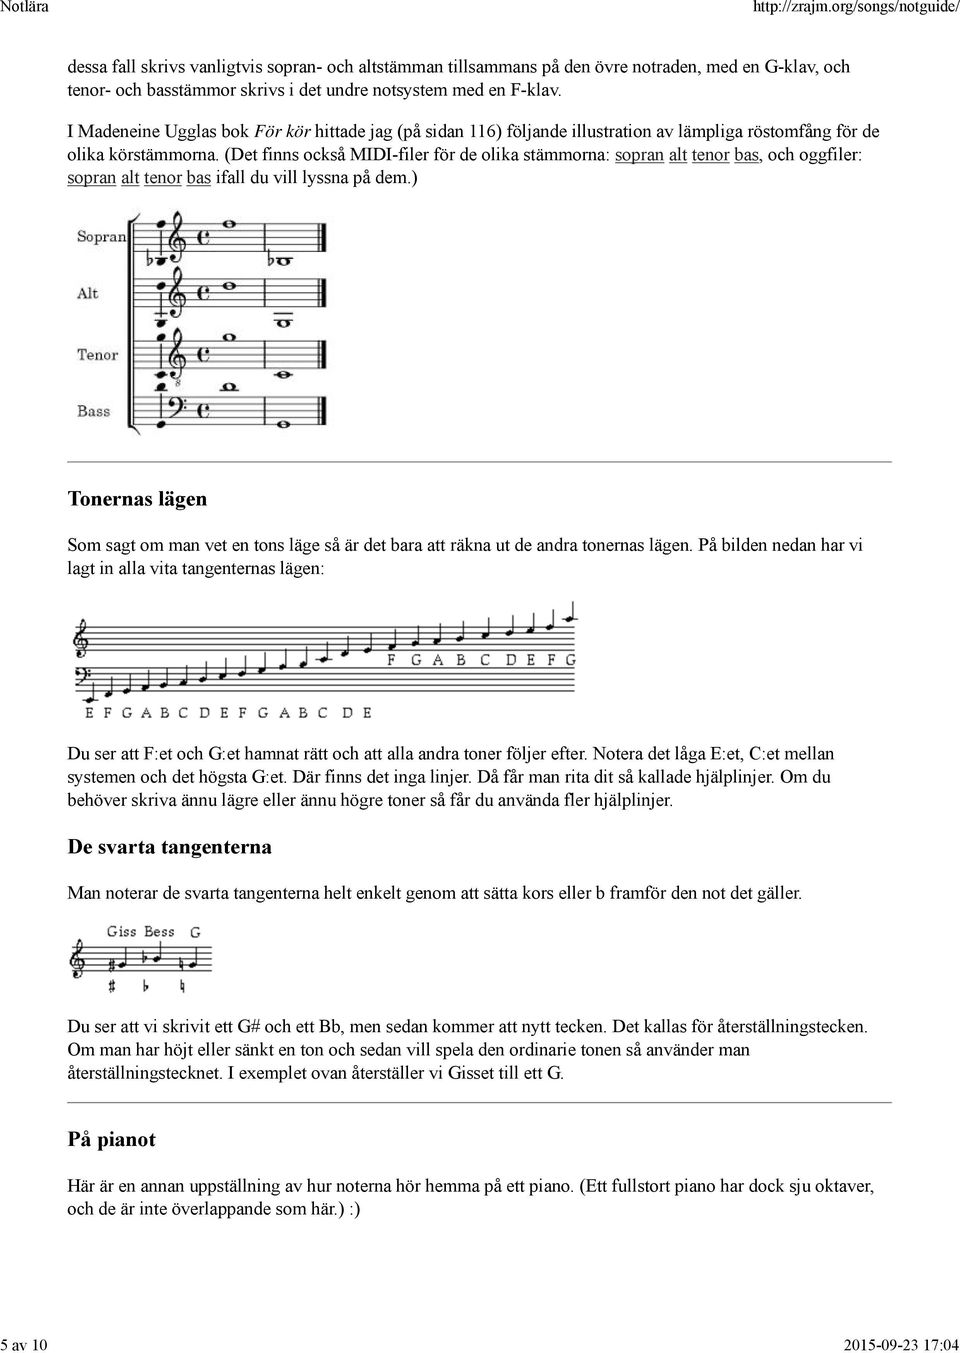 (Det finns också MIDI-filer för de olika stämmorna: sopran alt tenor bas, och oggfiler: sopran alt tenor bas ifall du vill lyssna på dem.